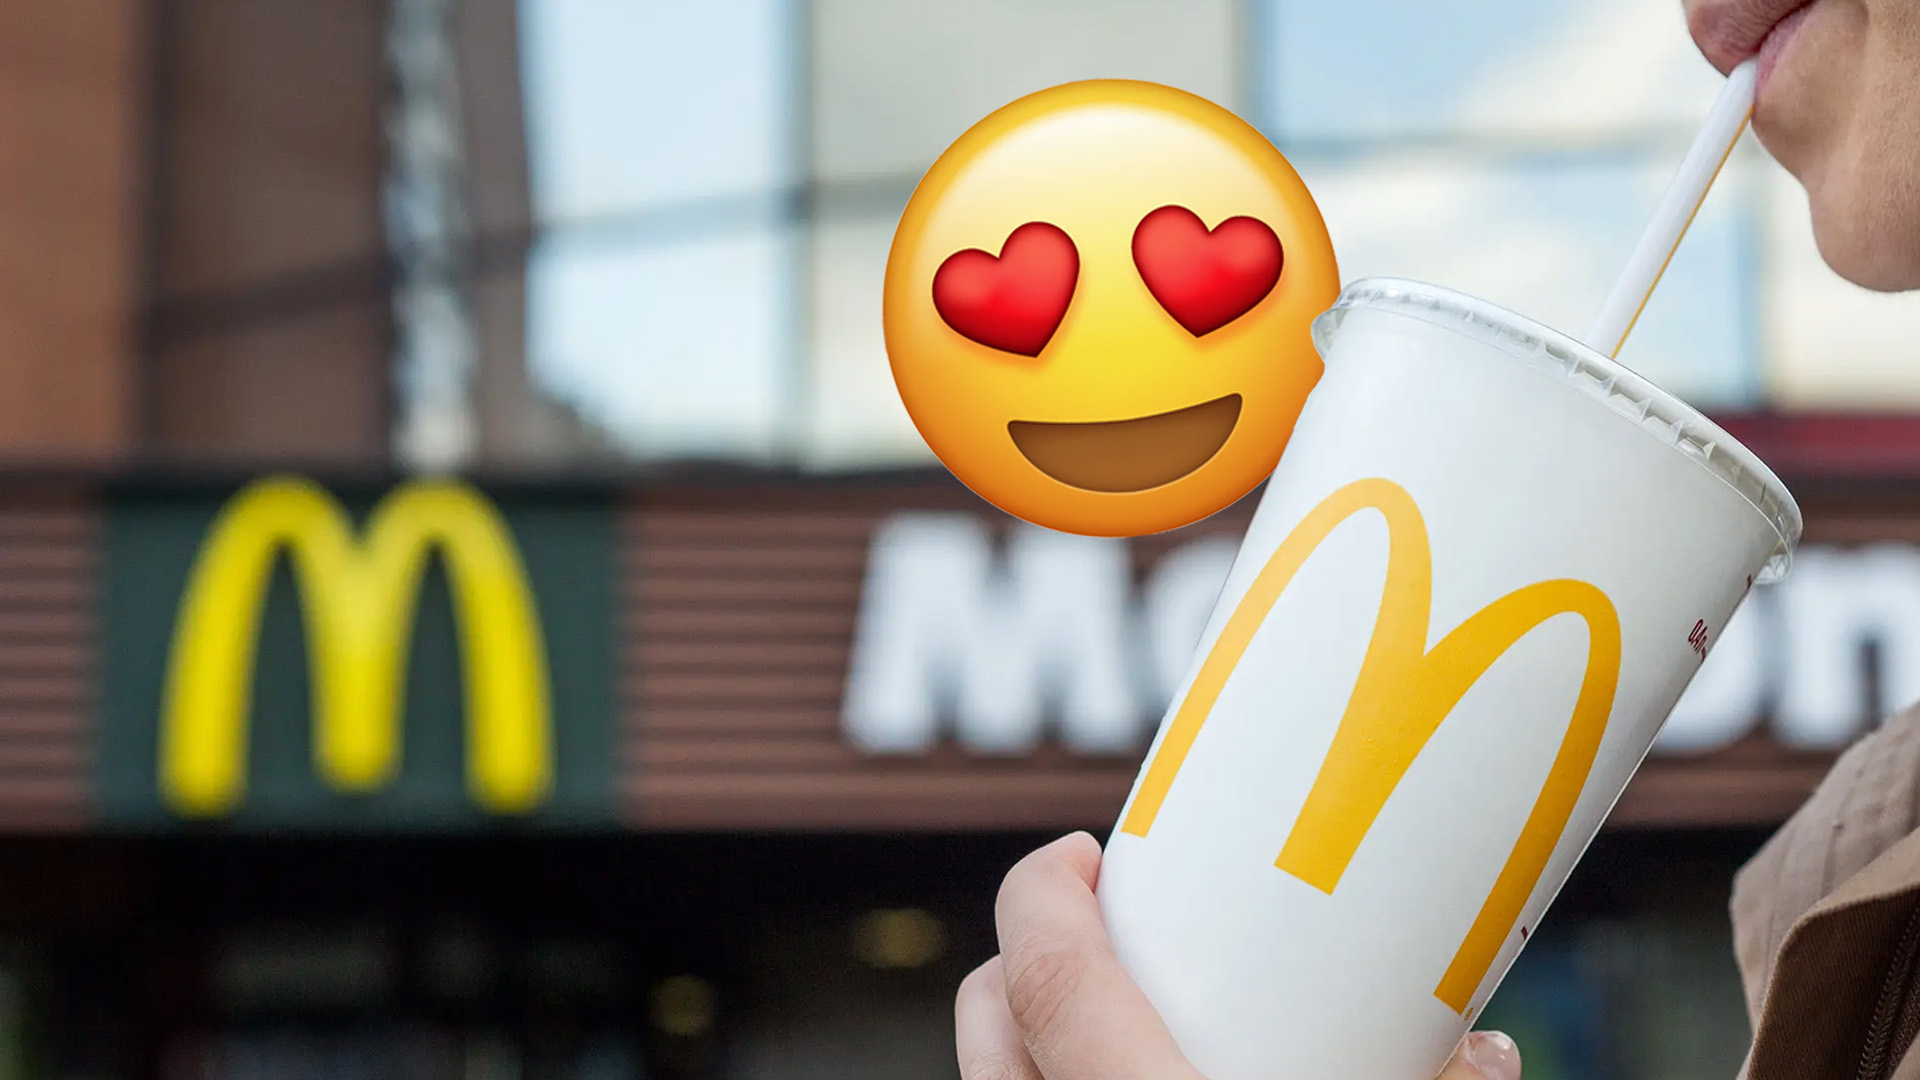 Scientist Explains Why McDonald's Coke Tastes Better Than Regular Coke